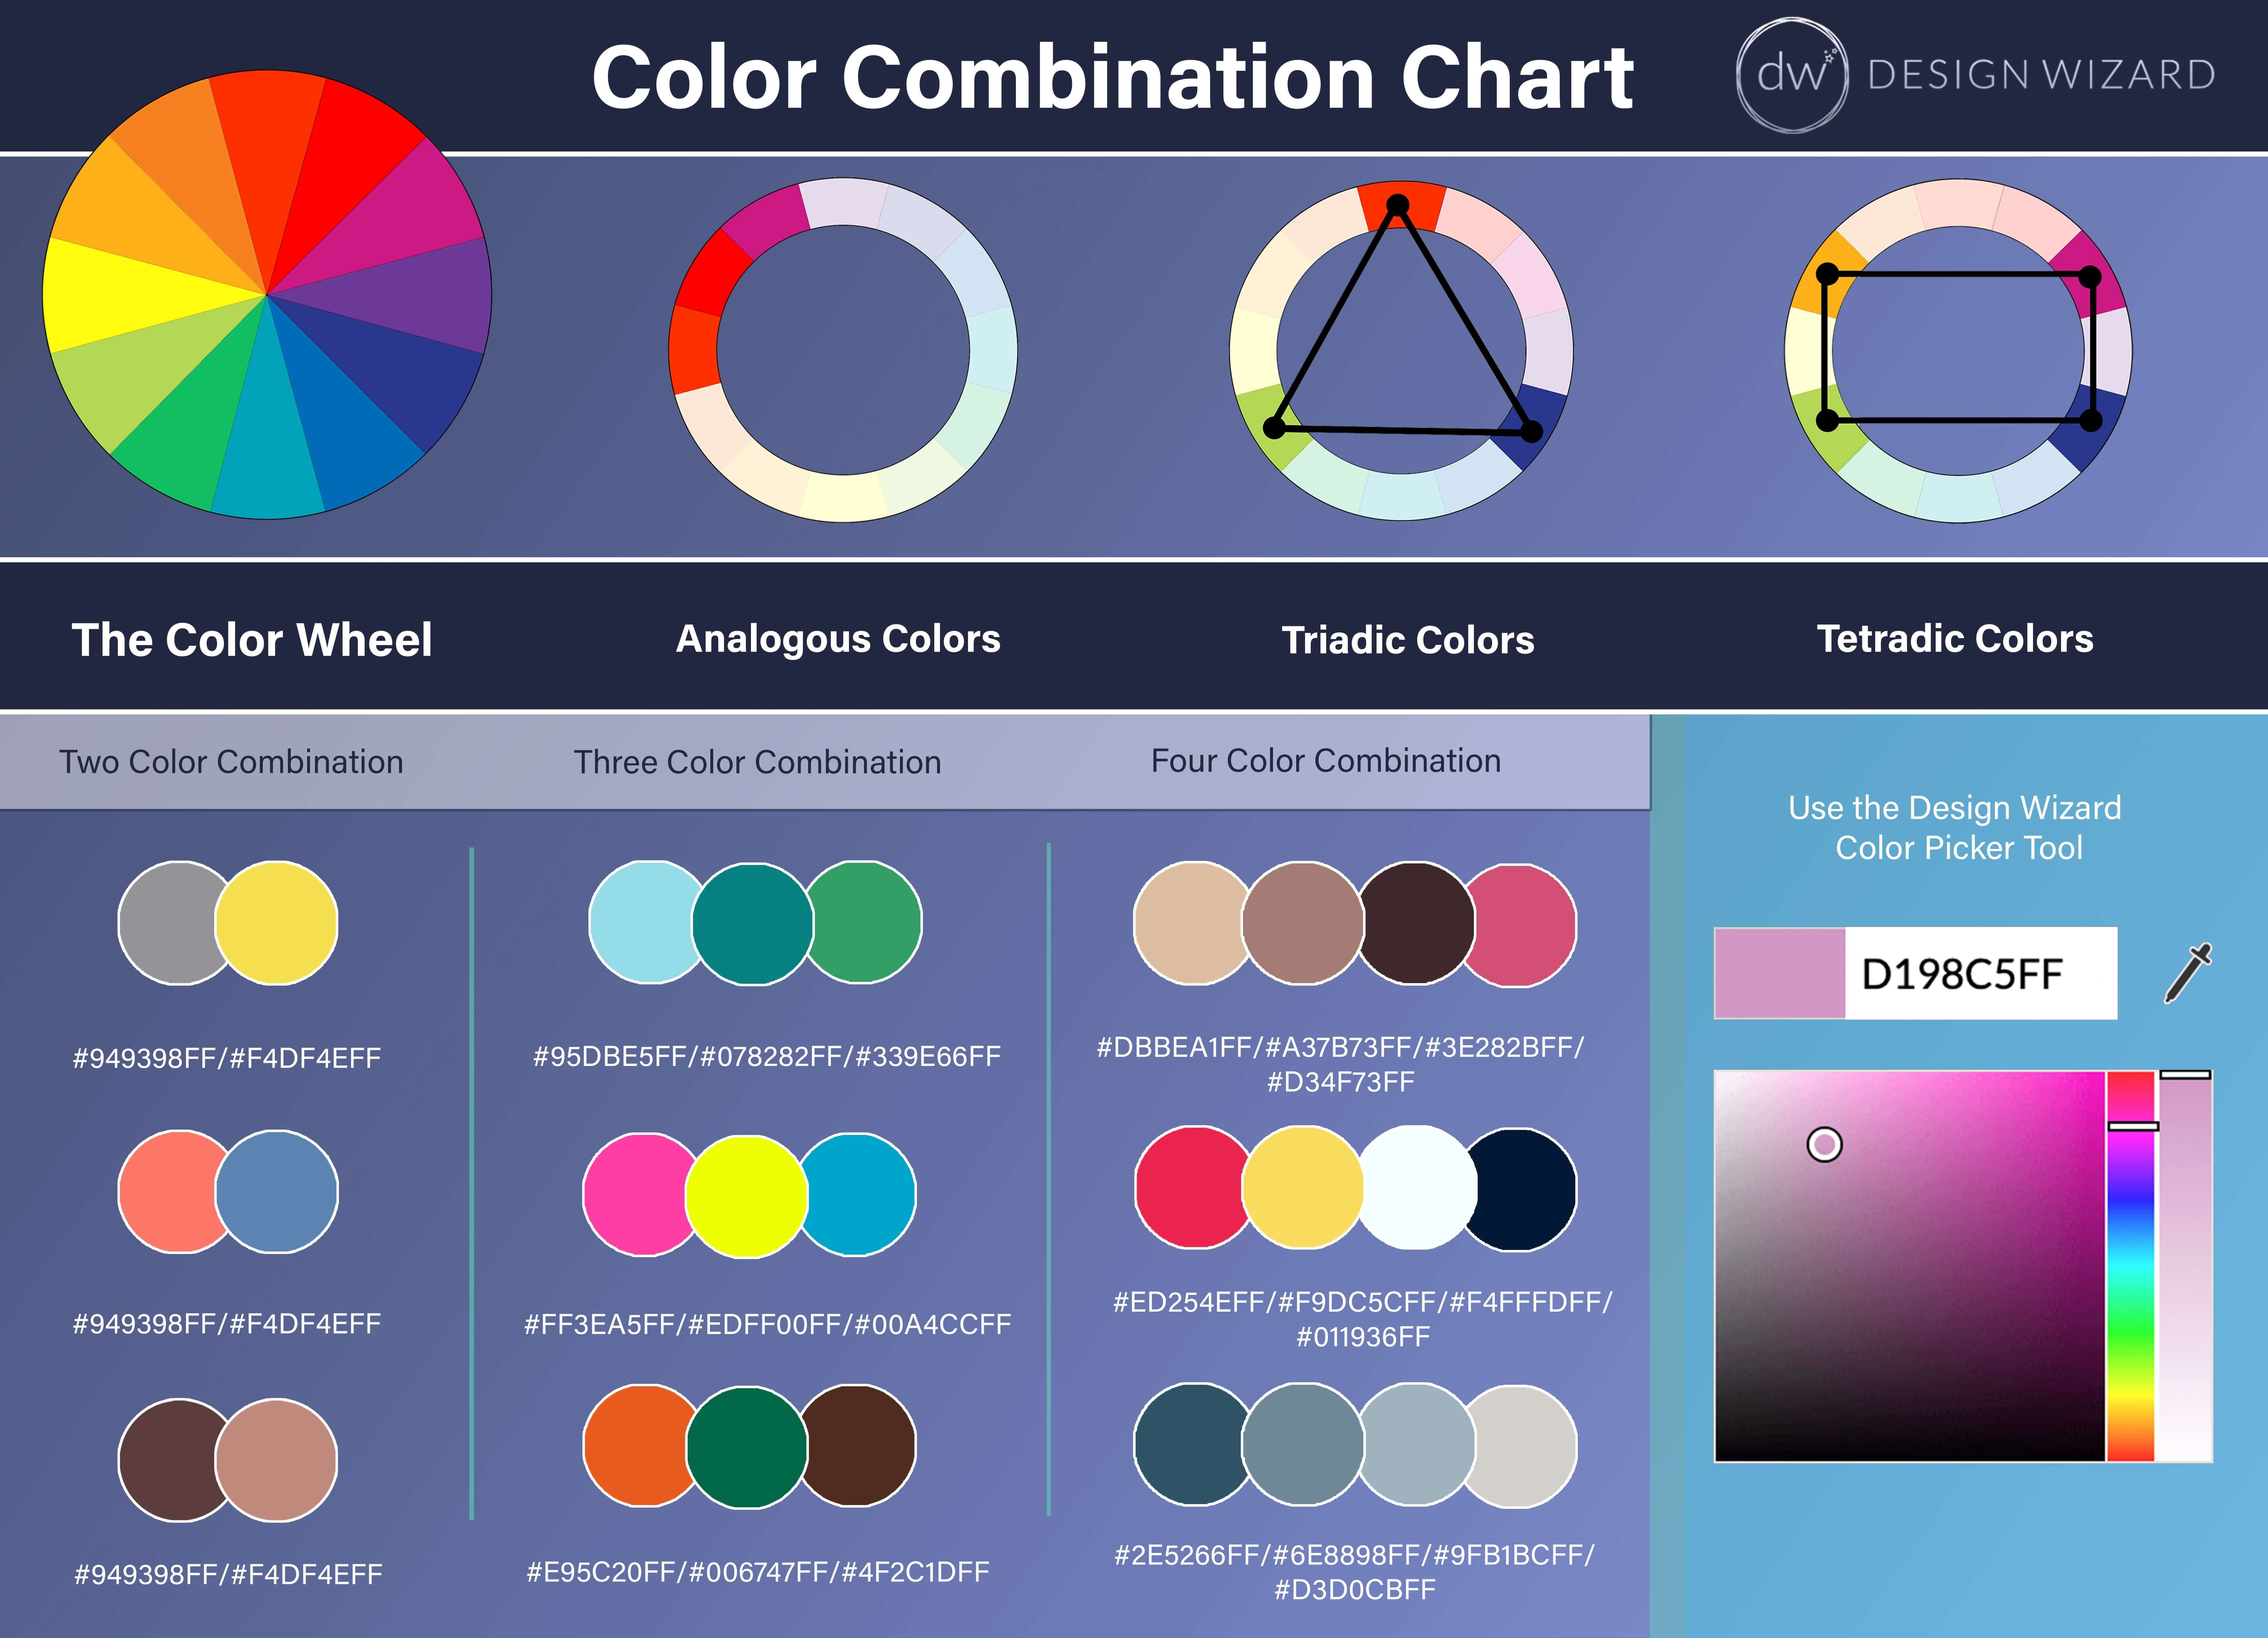 Cuadro de combinación de colores para referencia de creación de paleta de colores